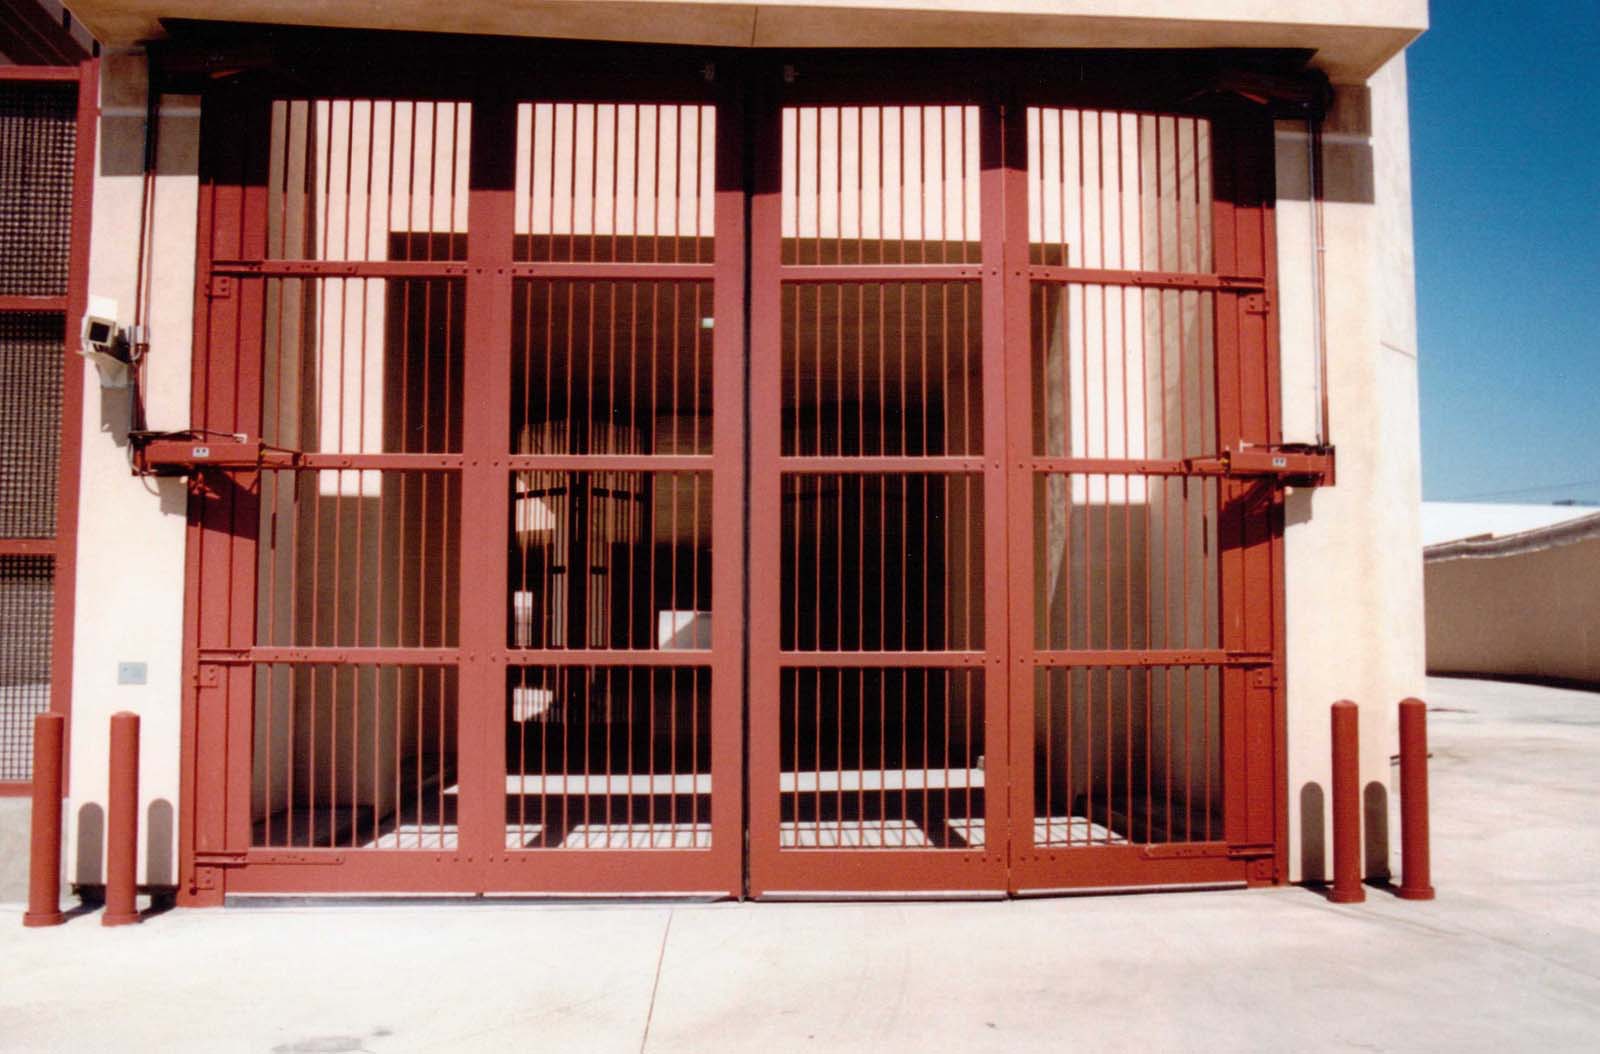 Sally Port Door for Correctional